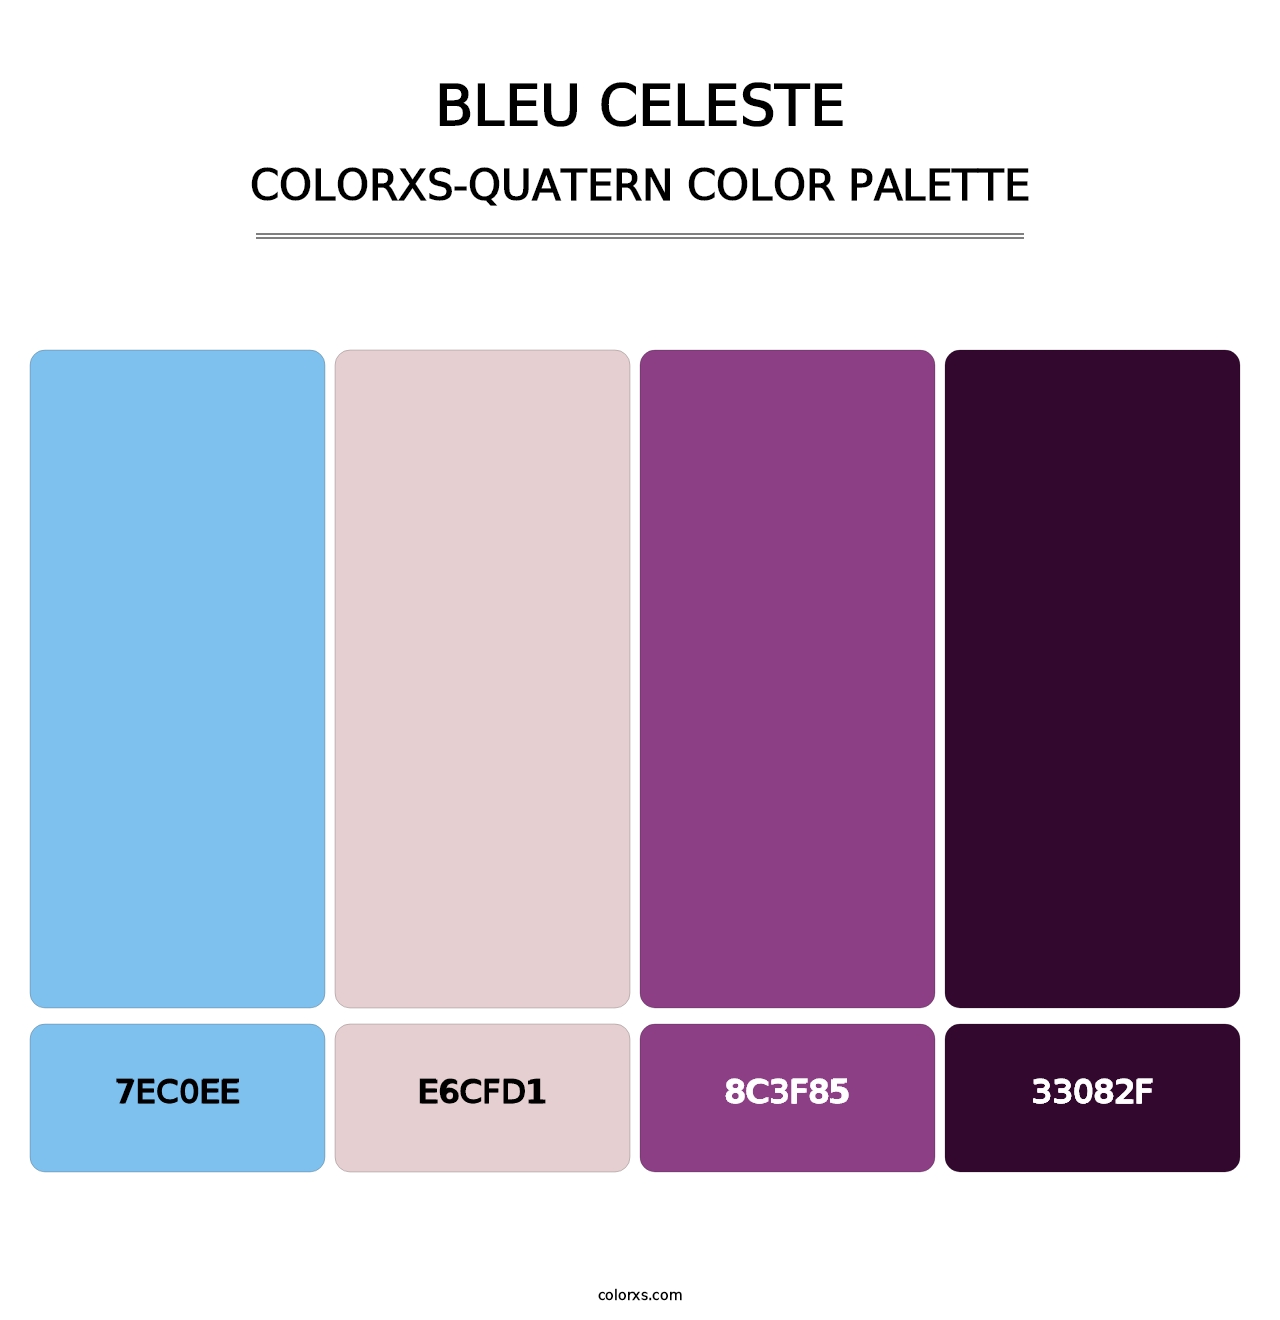 Bleu Celeste - Colorxs Quatern Palette